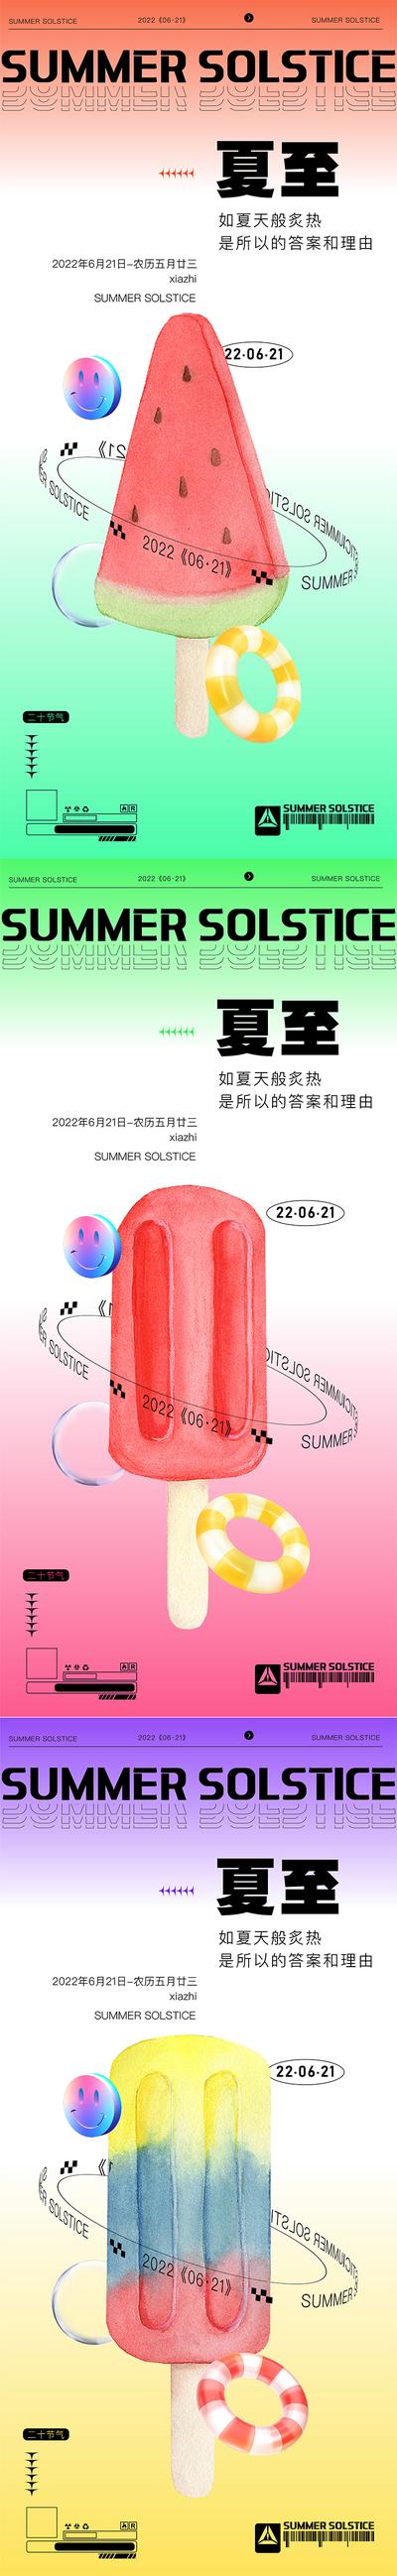 南门网 广告 海报 节气 夏至 系列 时尚 西瓜 冰棒